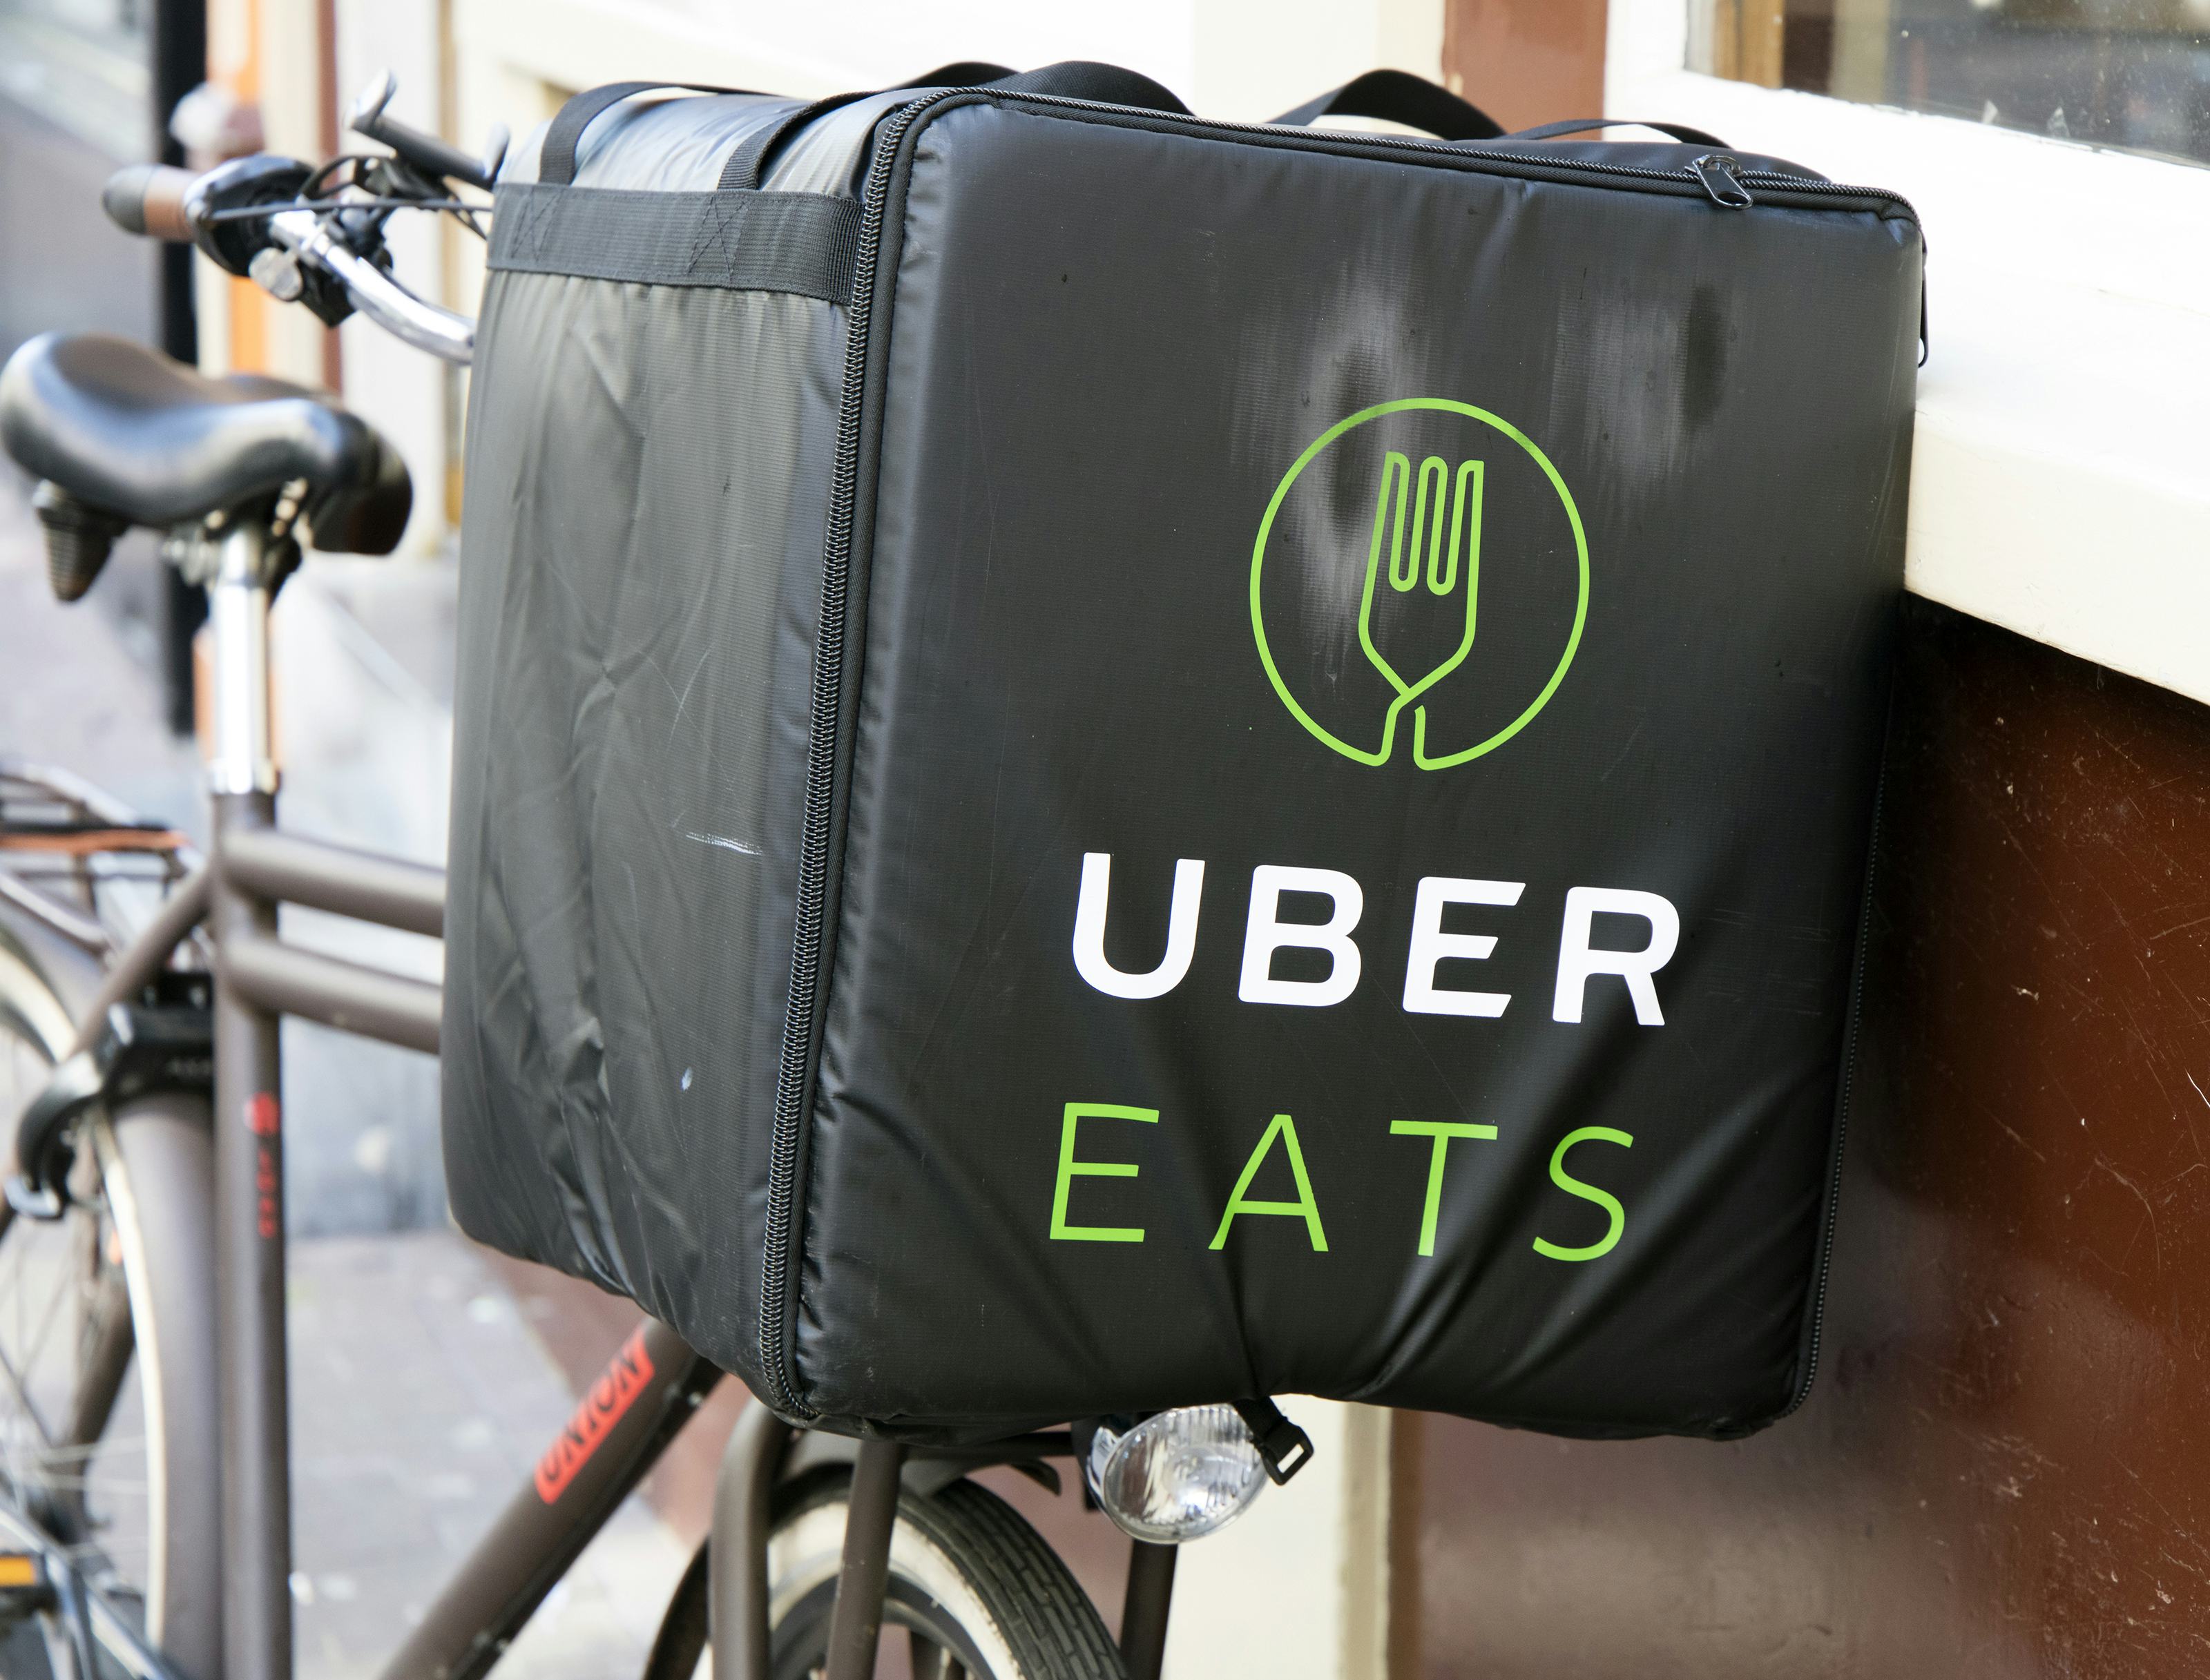 UberEats Rotterdam van start met 100 restaurants